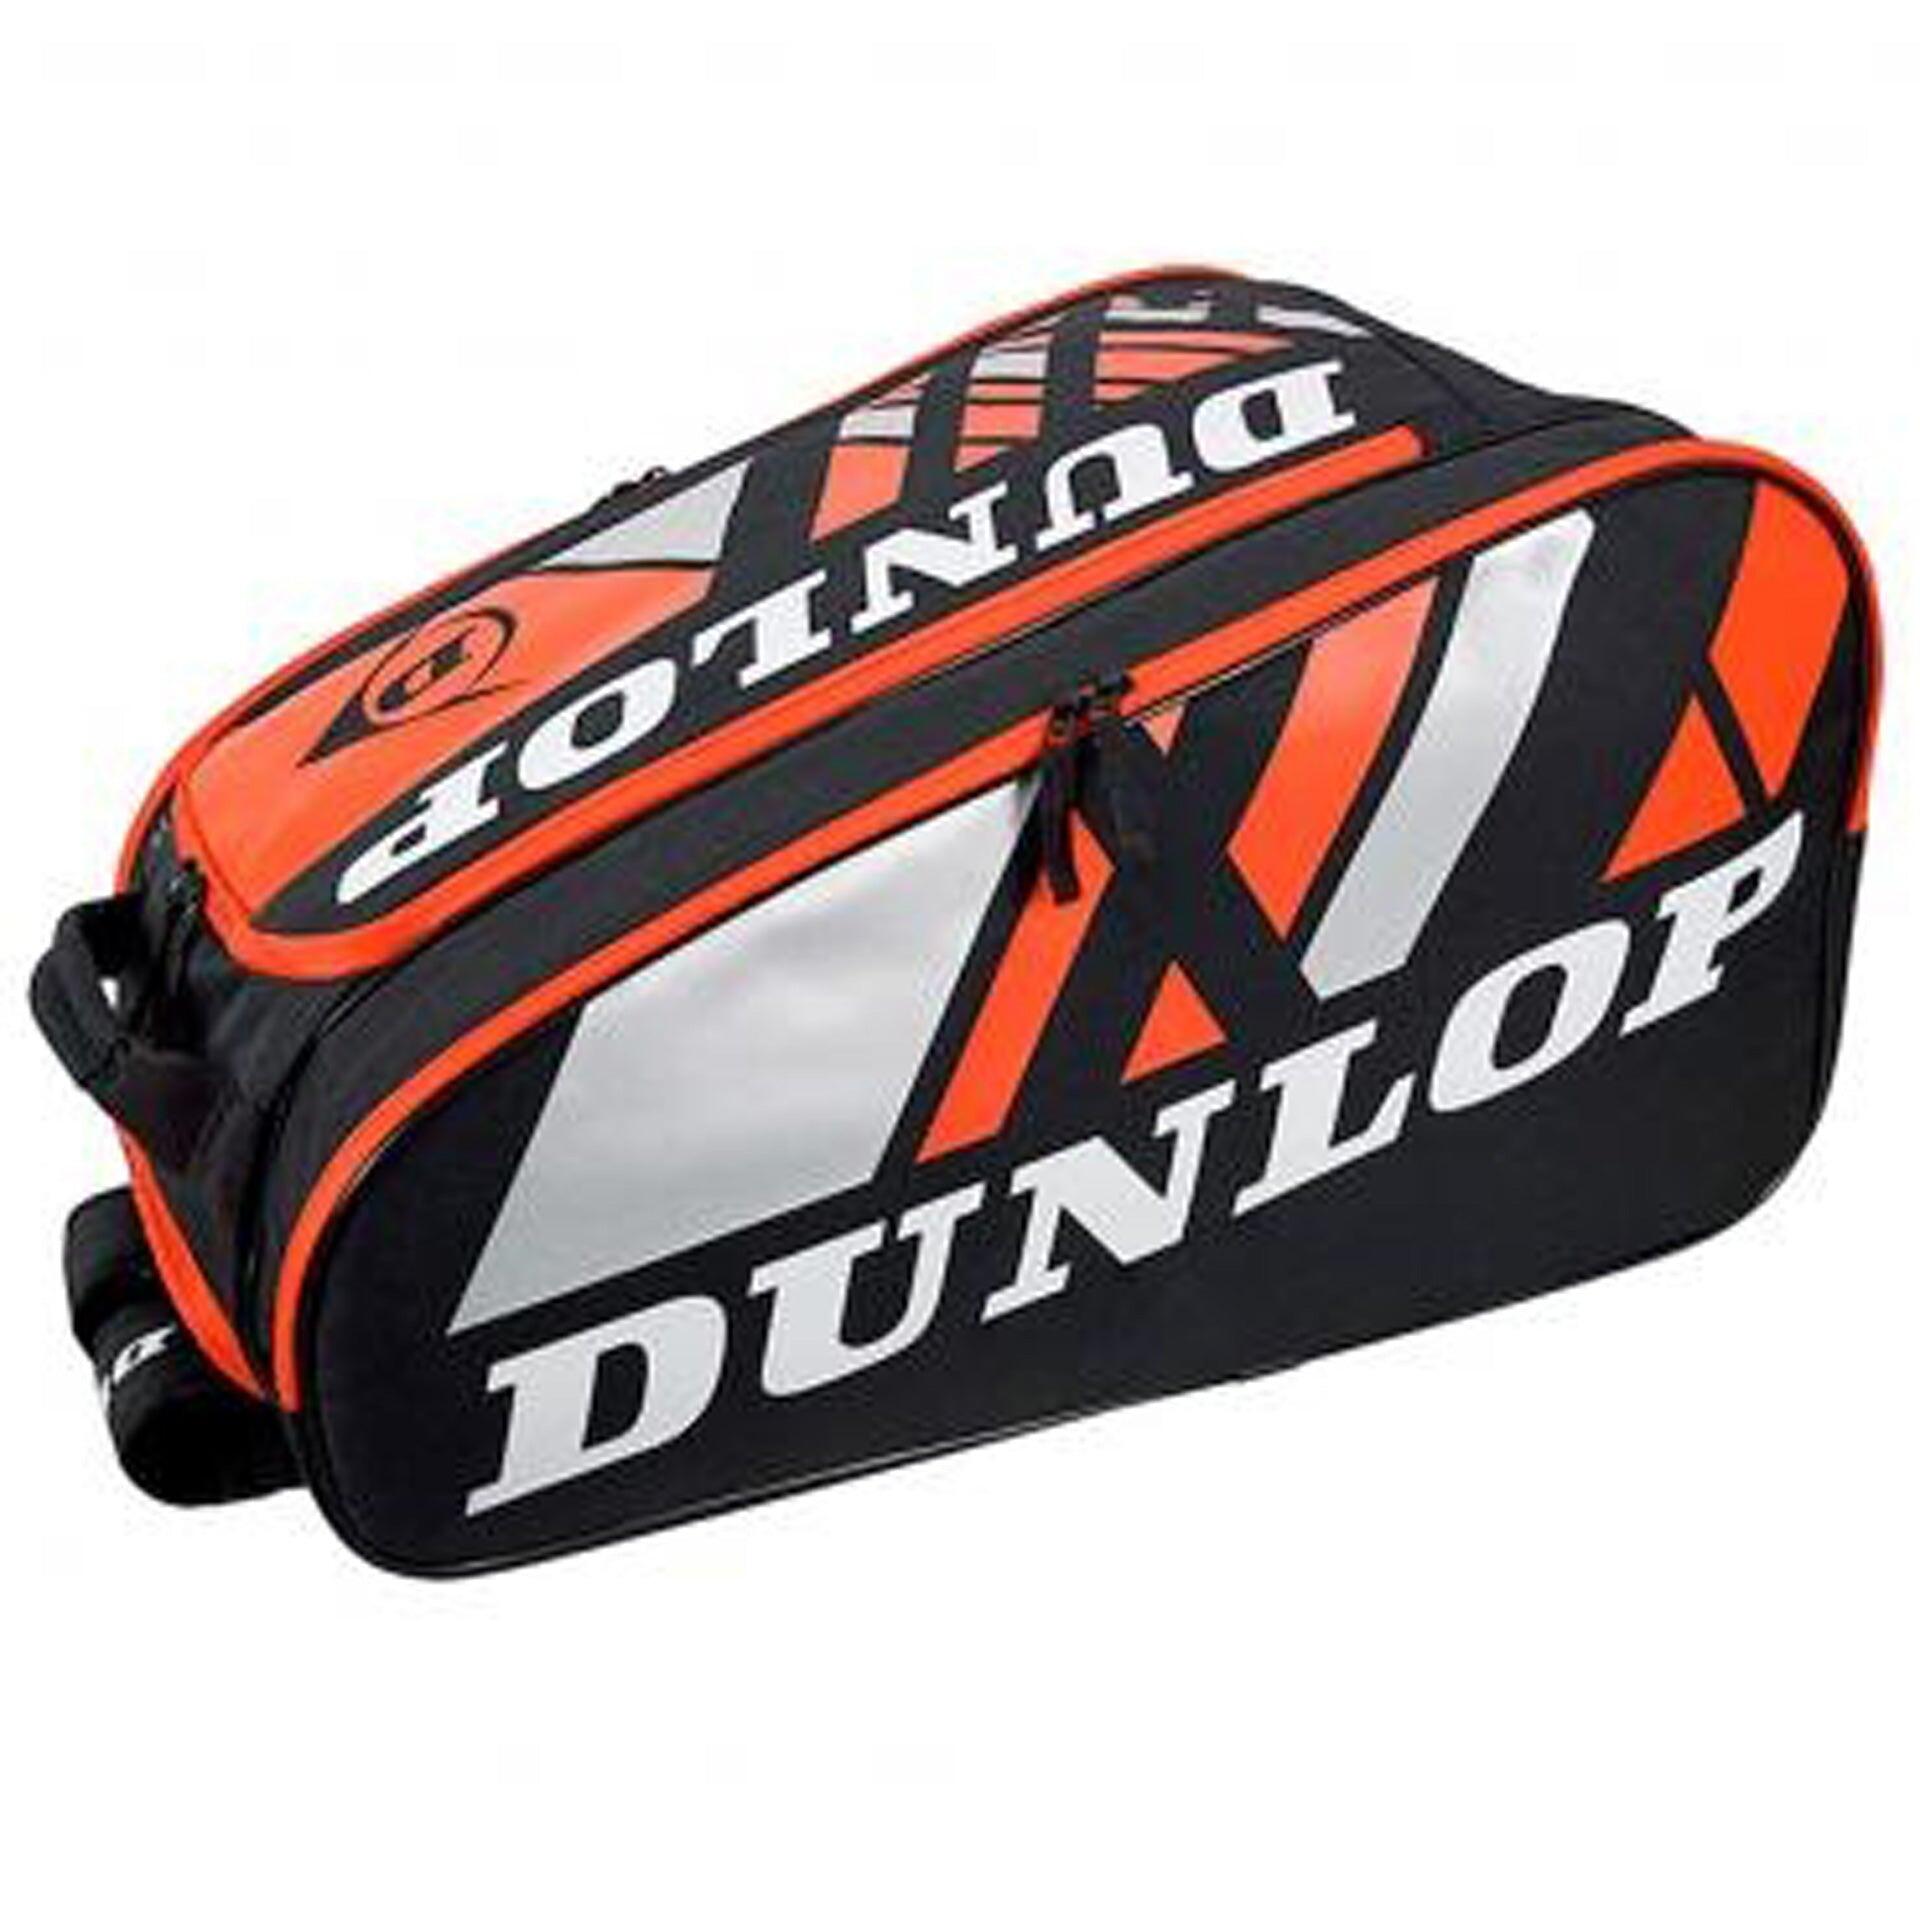 Dunlop Paletero Pro Padel Racket Bag - Black/Red 2/2